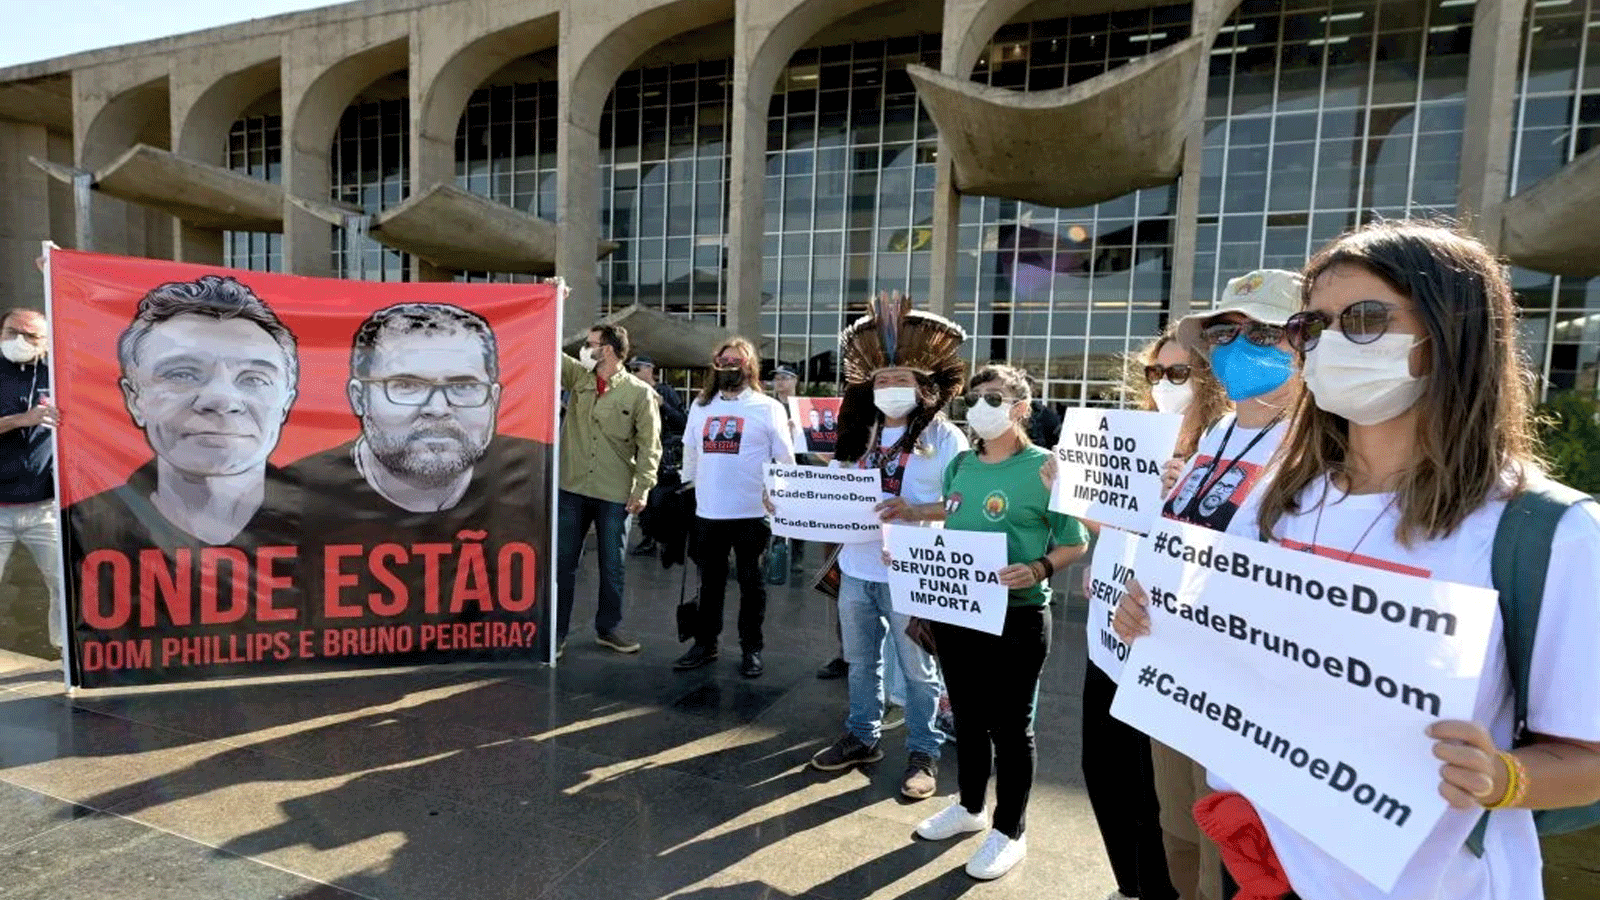 موظفو المؤسسة الوطنية للسكان الأصليين (FUNAI) وأعضاء الحركات الاجتماعية يتظاهرون خارج وزارة العدل في برازيليا لأجل الصحفي البريطاني دوم فيليبس والمتخصص في شؤون السكان الأصليين البرازيلي برونو بيريرا، في 14 حزيران\يونيو 2022